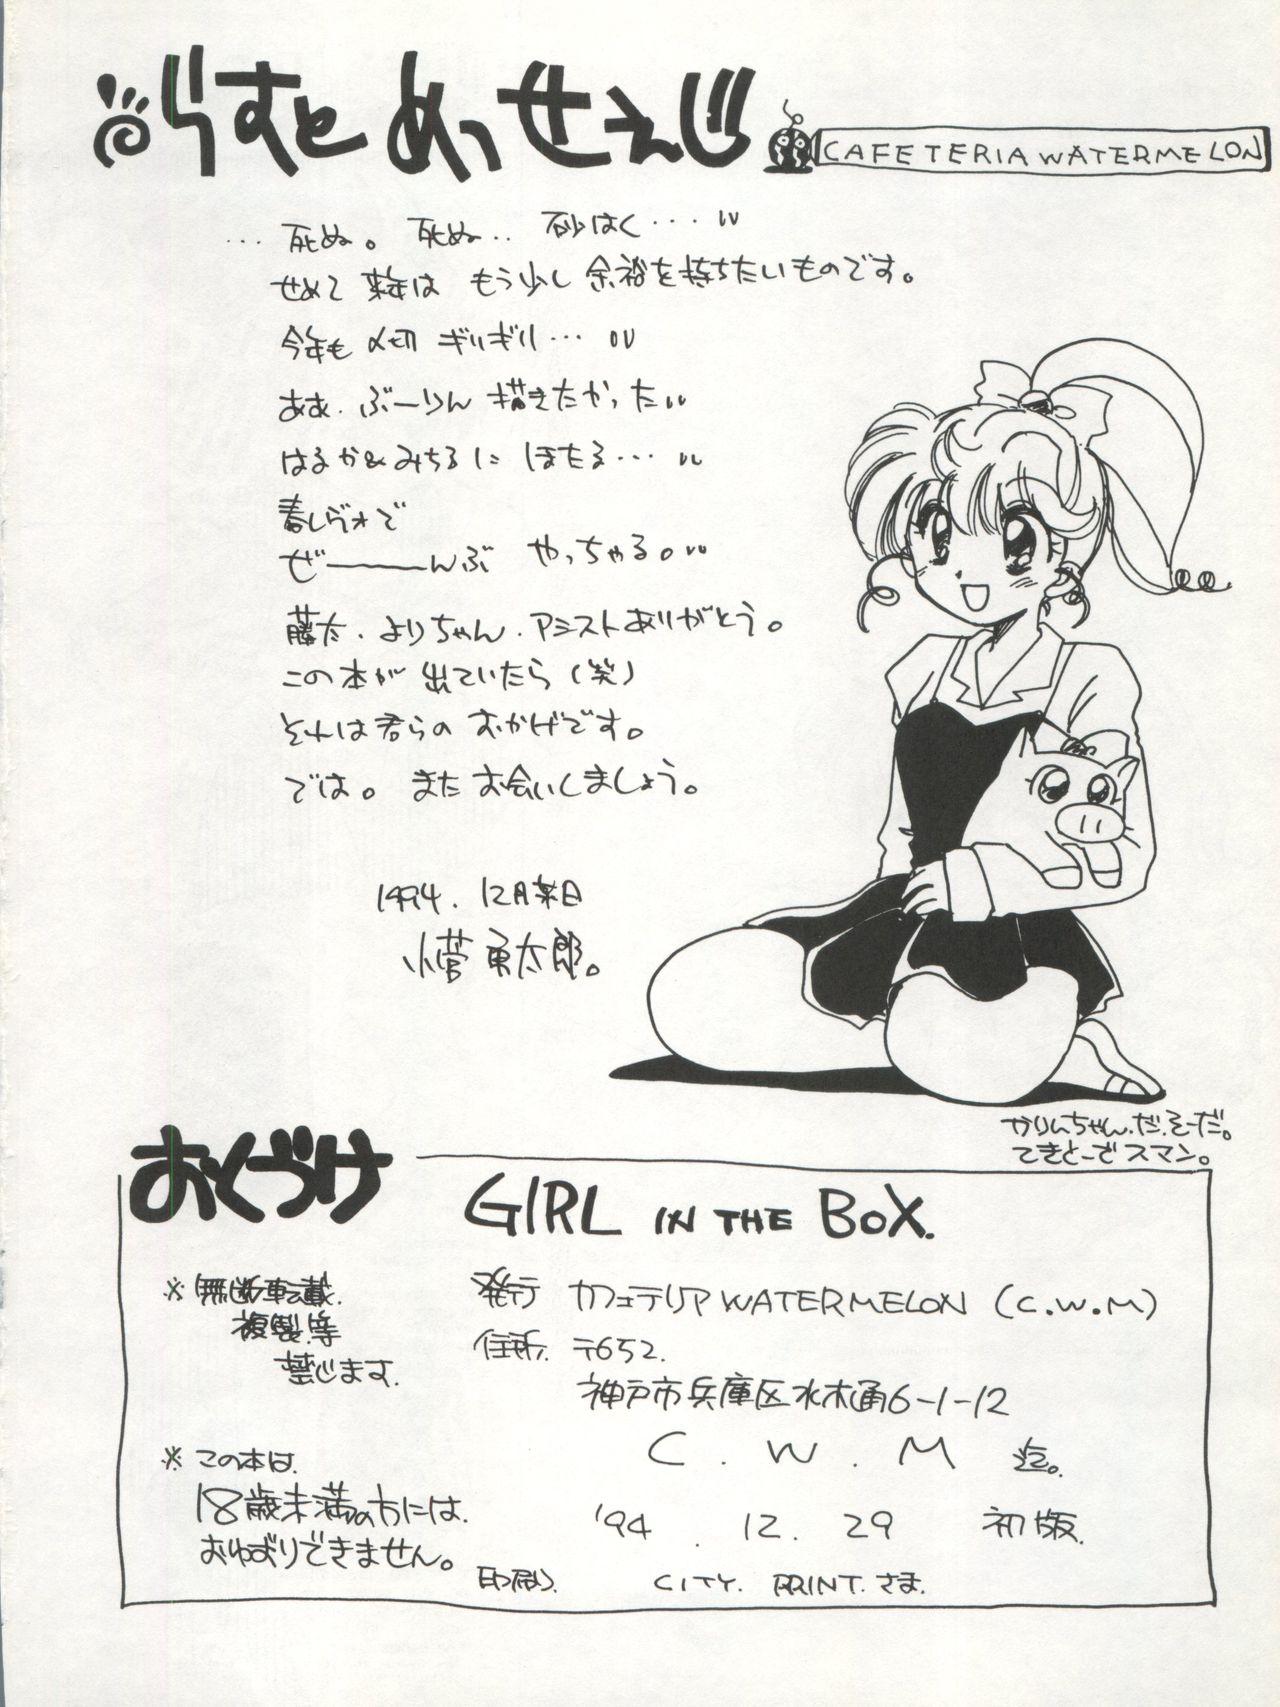 GIRL IN THE BOX 26